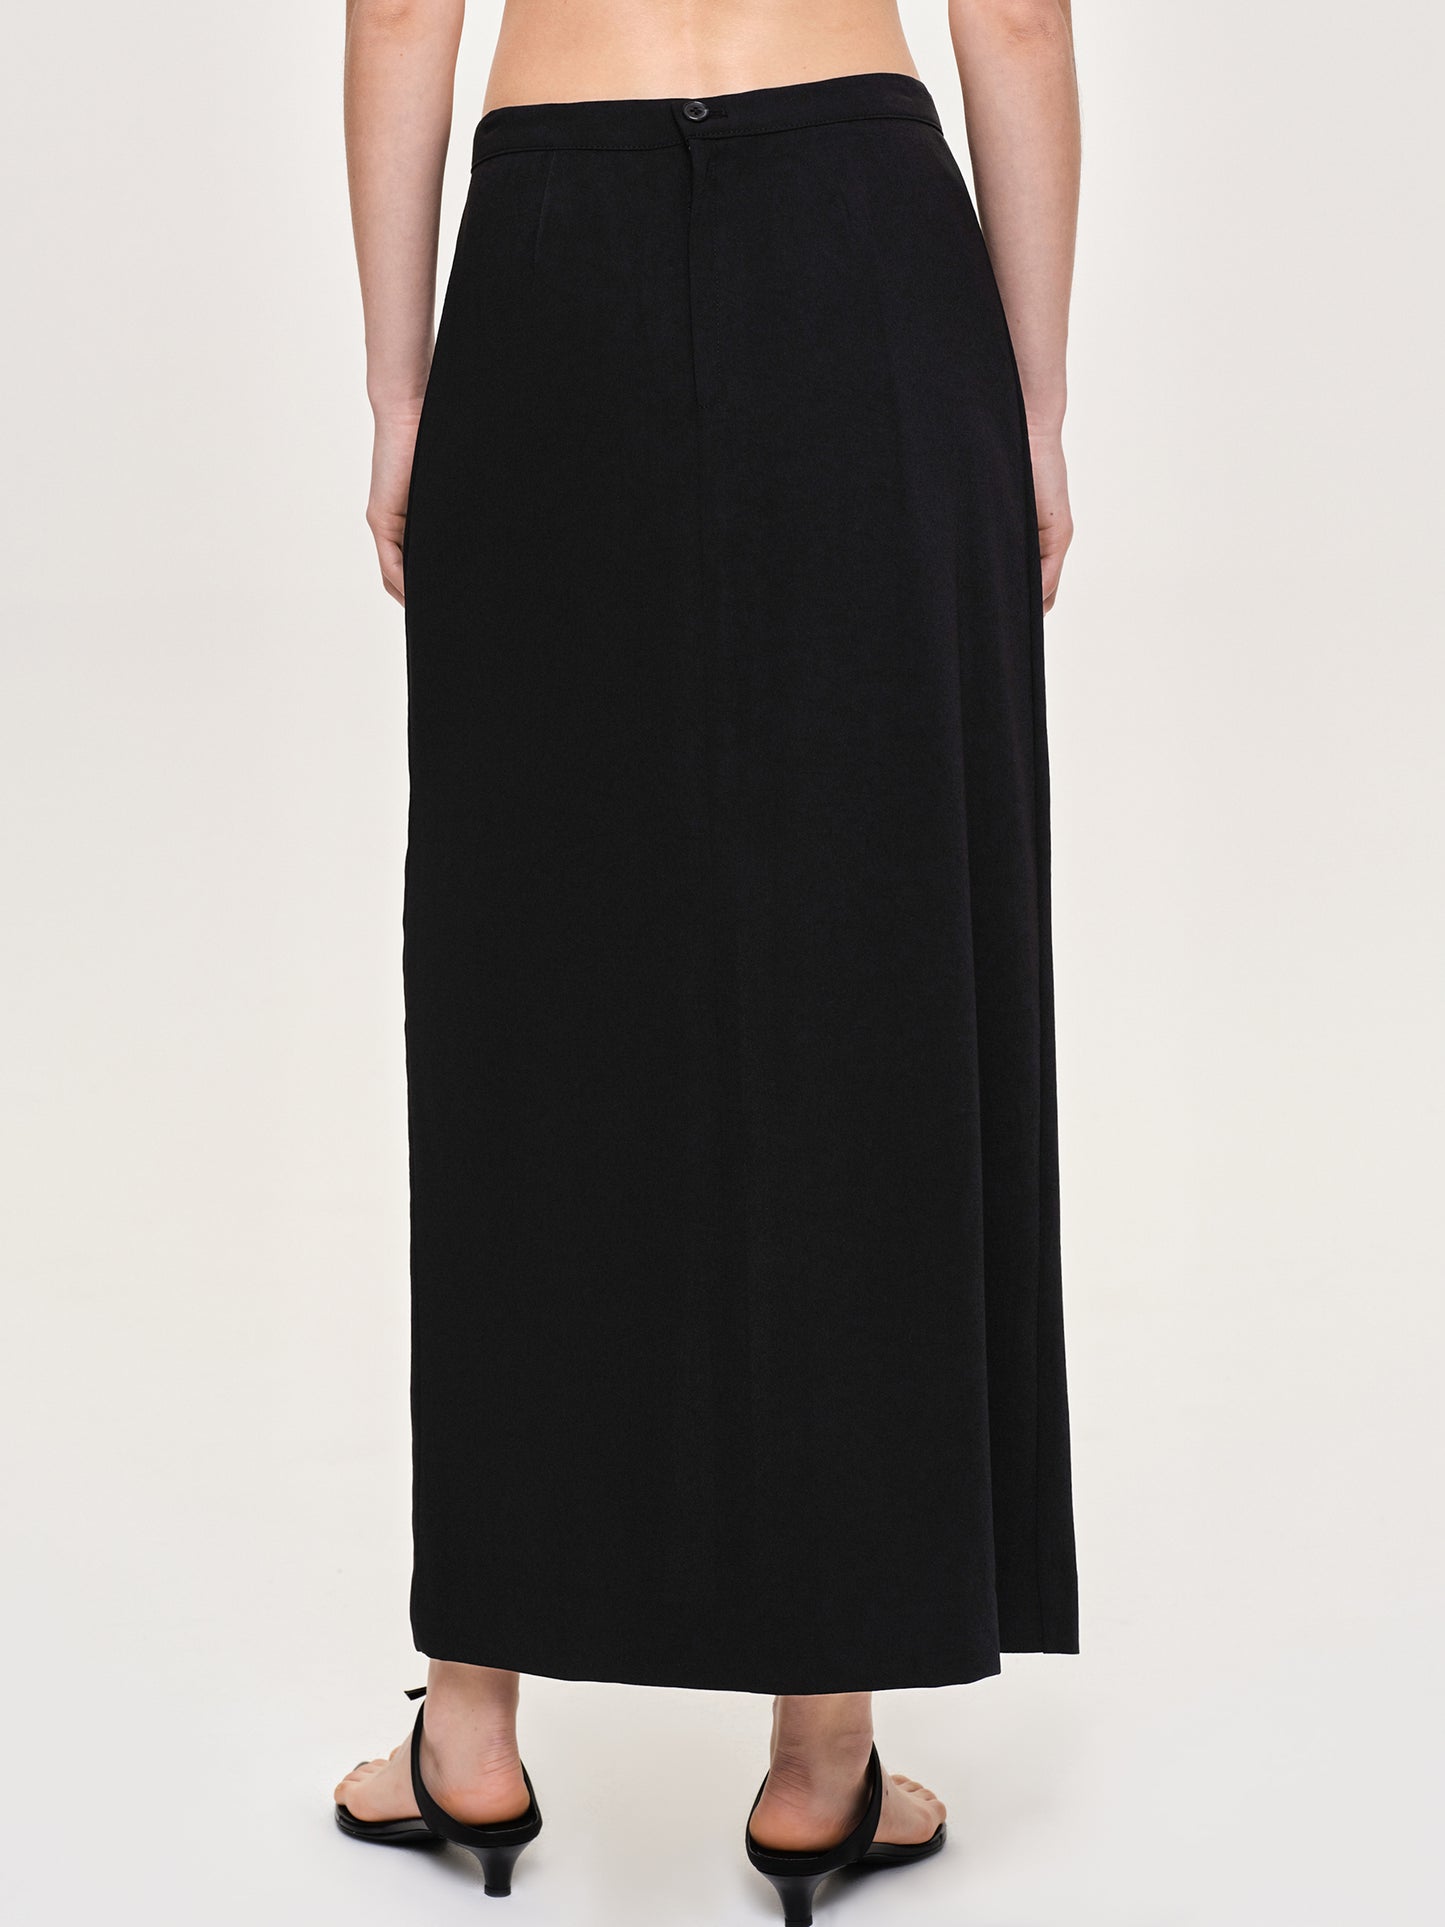 Slit Maxi Skirt, Black